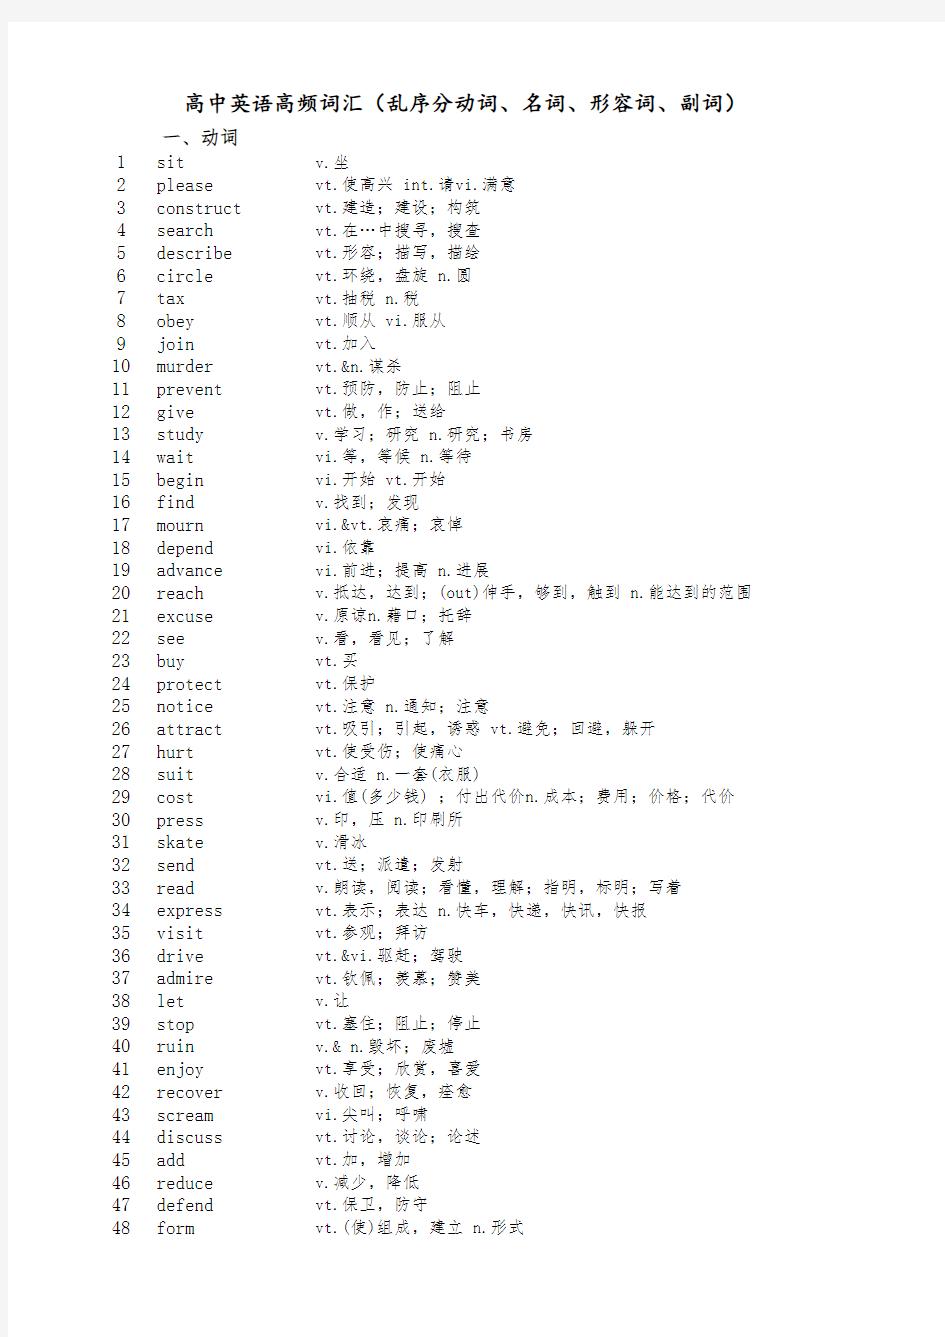 高中英语高频词汇(1800个、乱序、按词性分类)